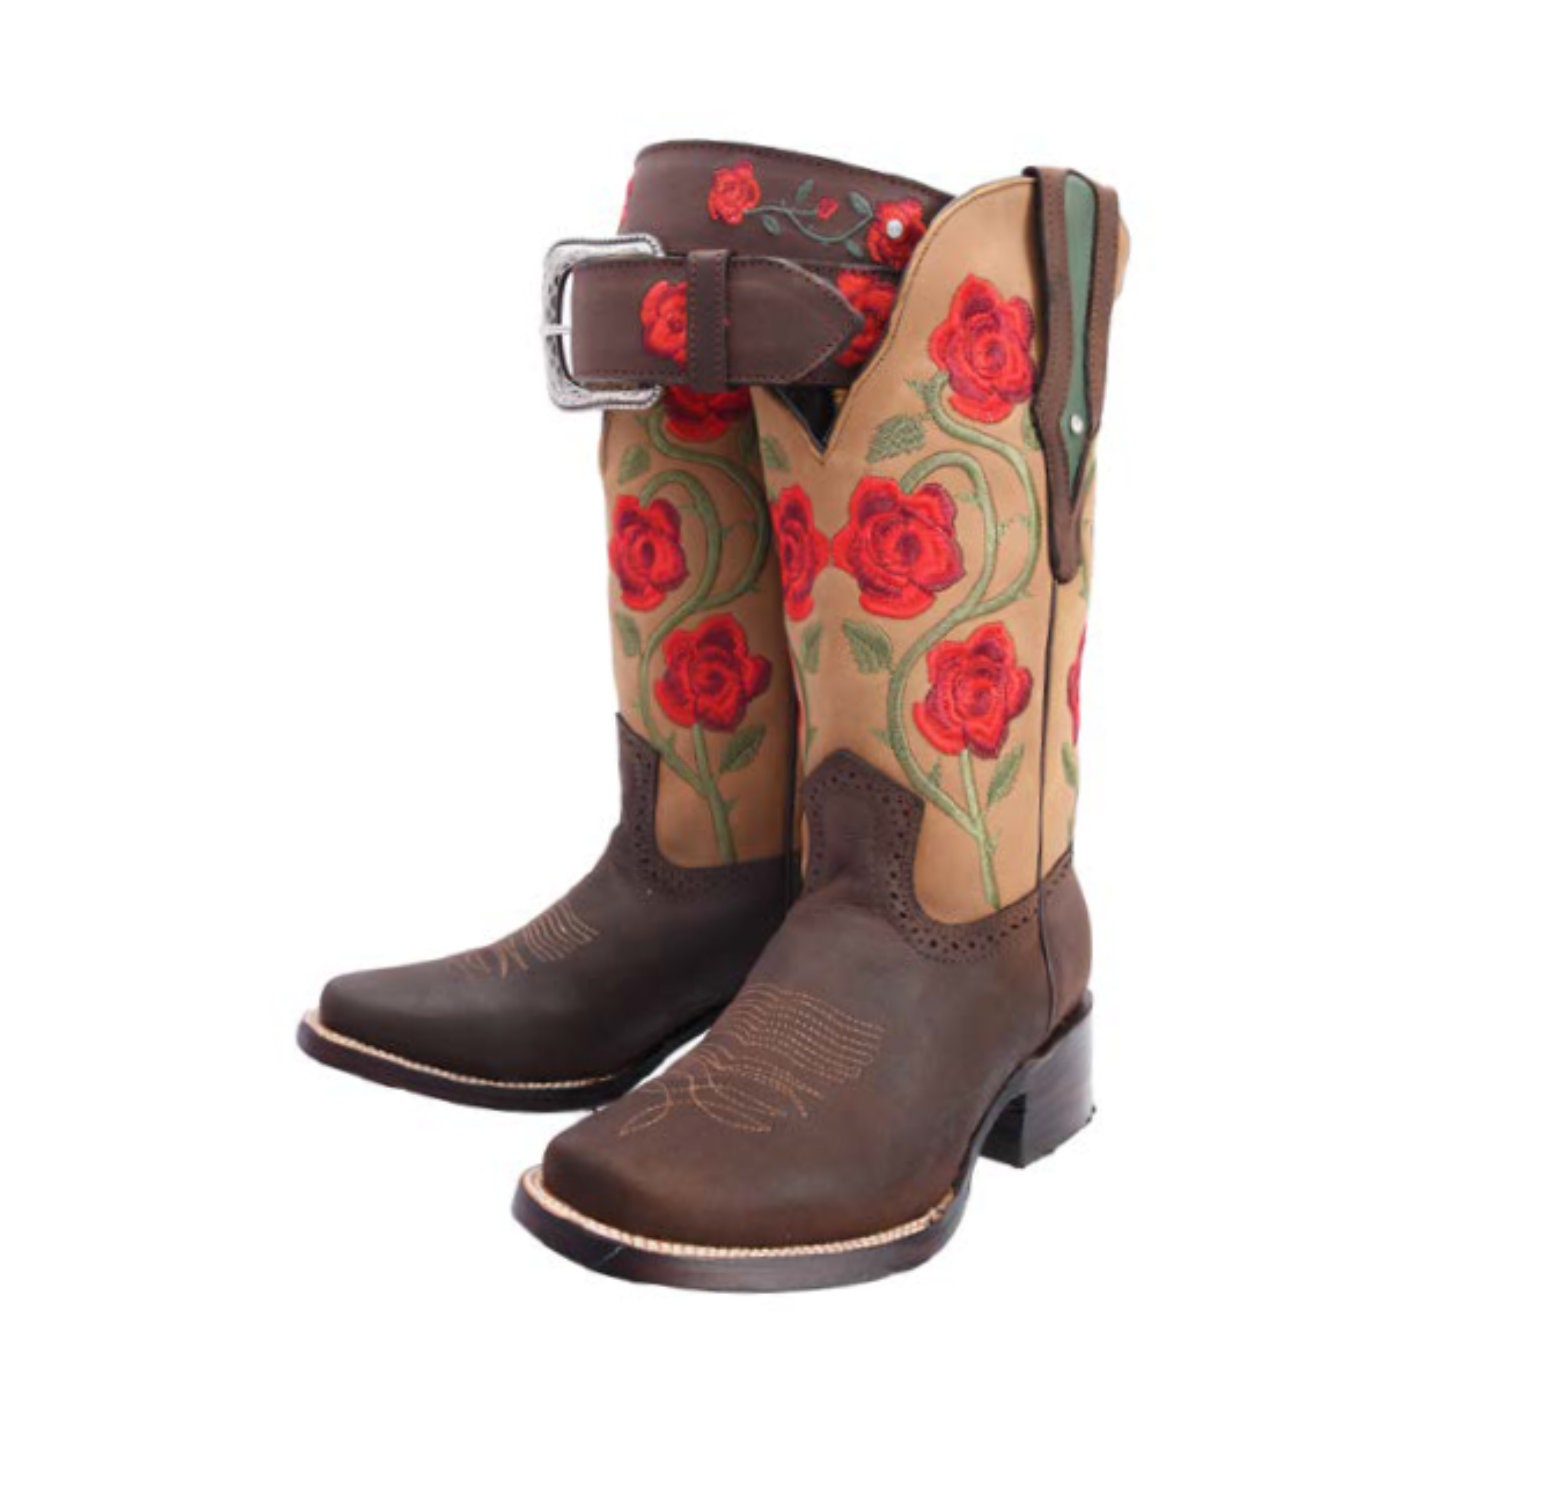 entrenador hada Desventaja Women's Western Boots Boots With Roses/botas Vaqueras - Etsy